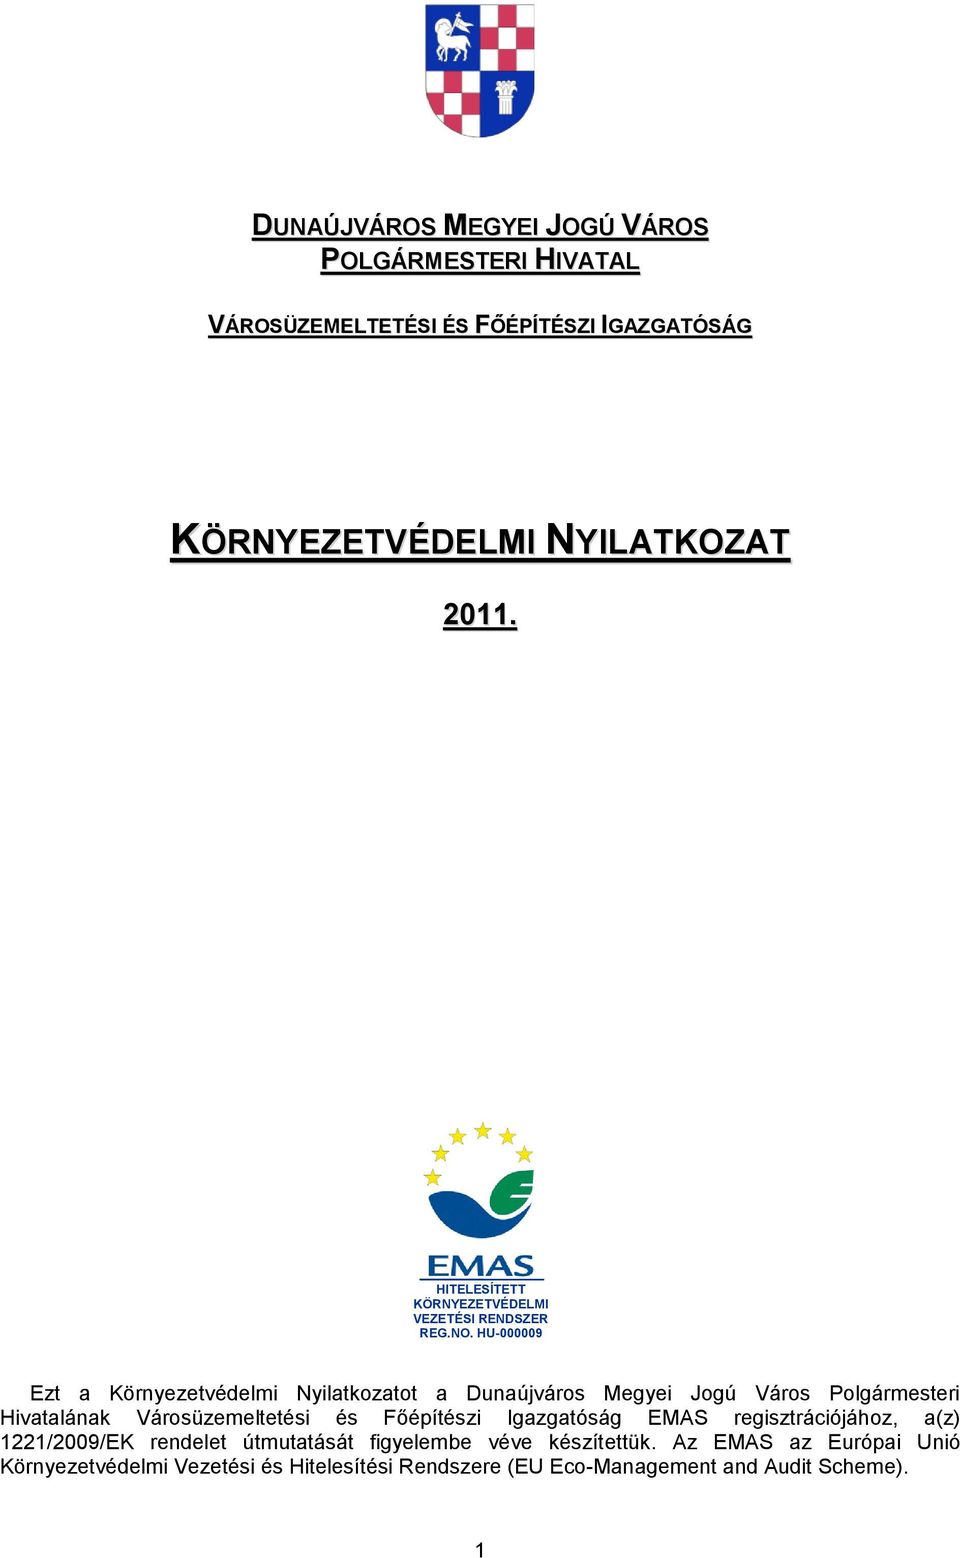 HU-000009 Ezt a Környezetvédelmi Nyilatkozatot a Dunaújváros Megyei Jogú Város Polgármesteri Hivatalának Városüzemeltetési és